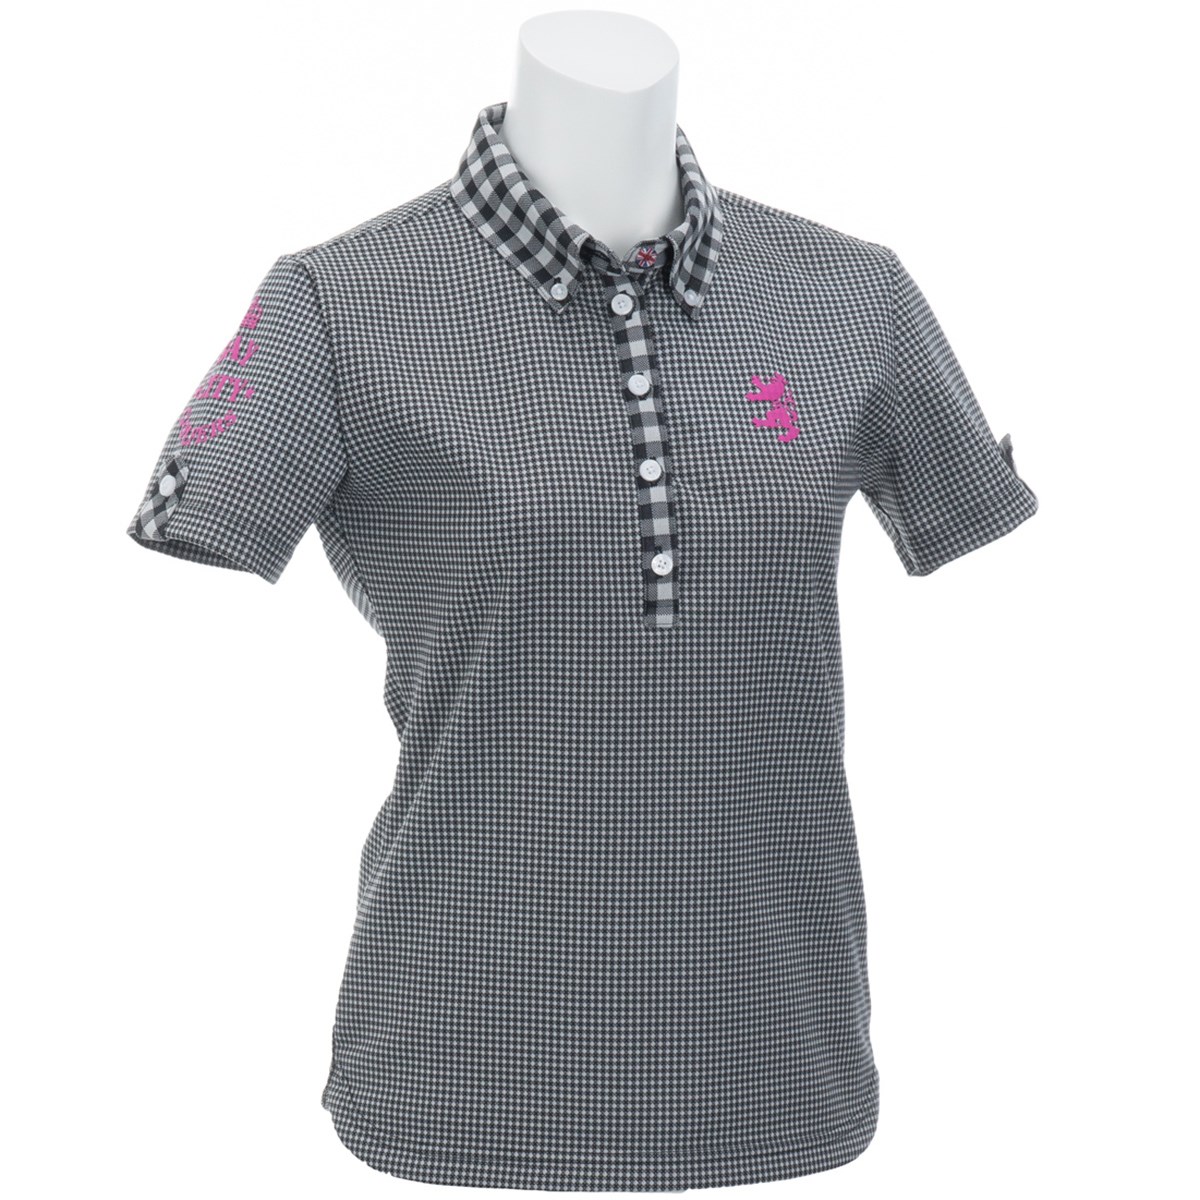  [アウトレット] [在庫限りのお買い得商品] アドミラル ギンガム ボタンダウン半袖ポロシャツ ゴルフウェア